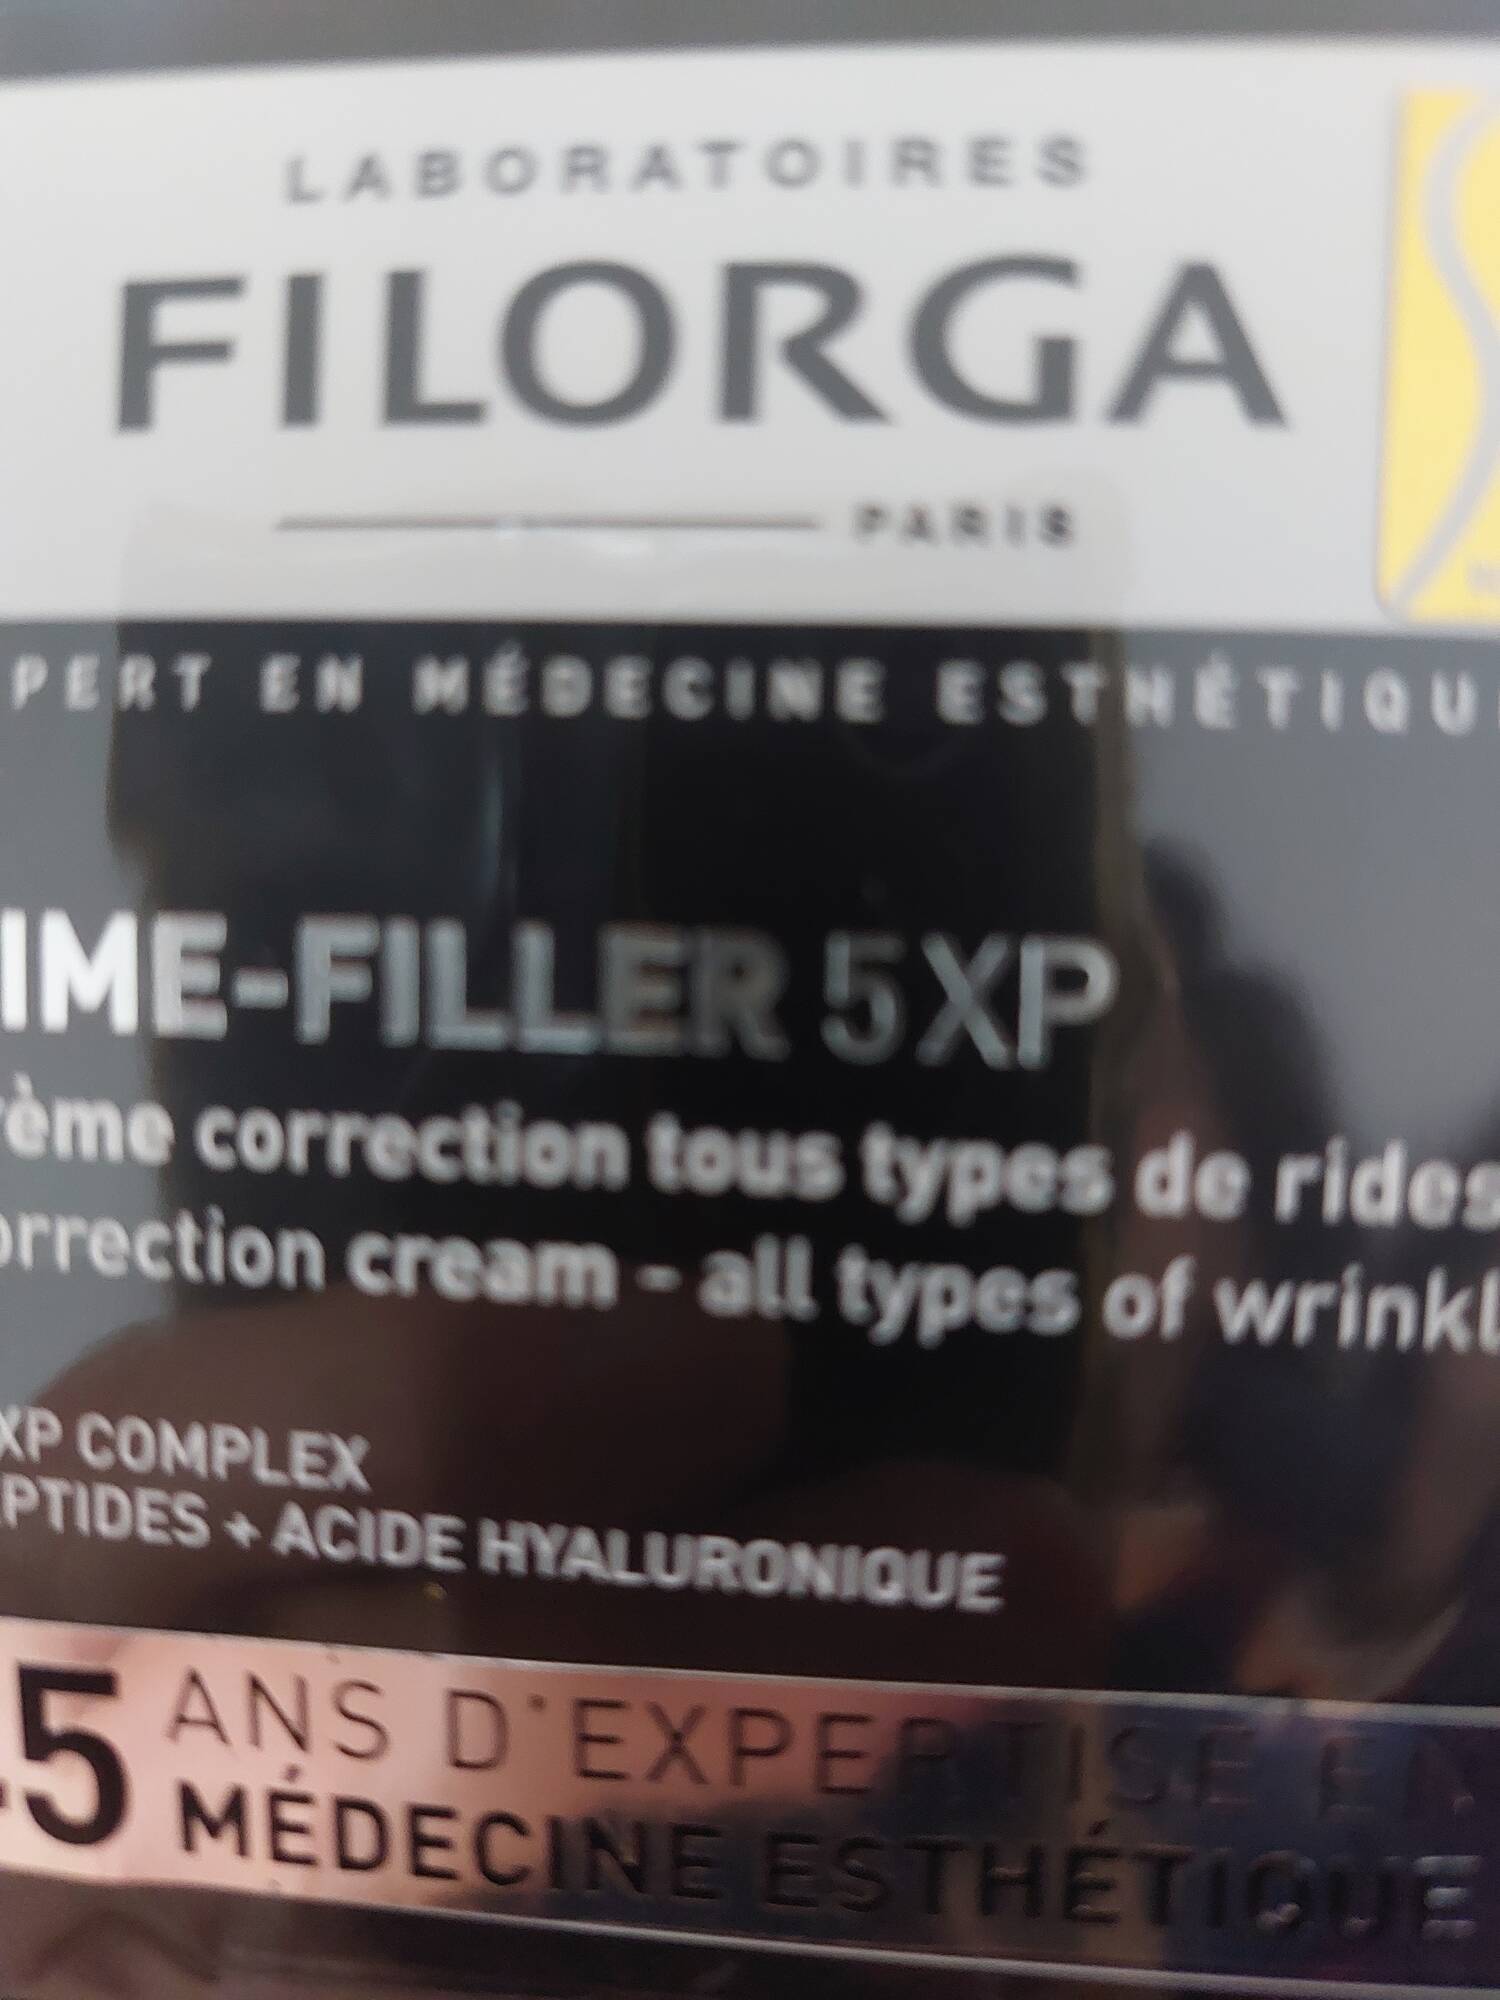 FILORGA - TIME FILLER 5XP